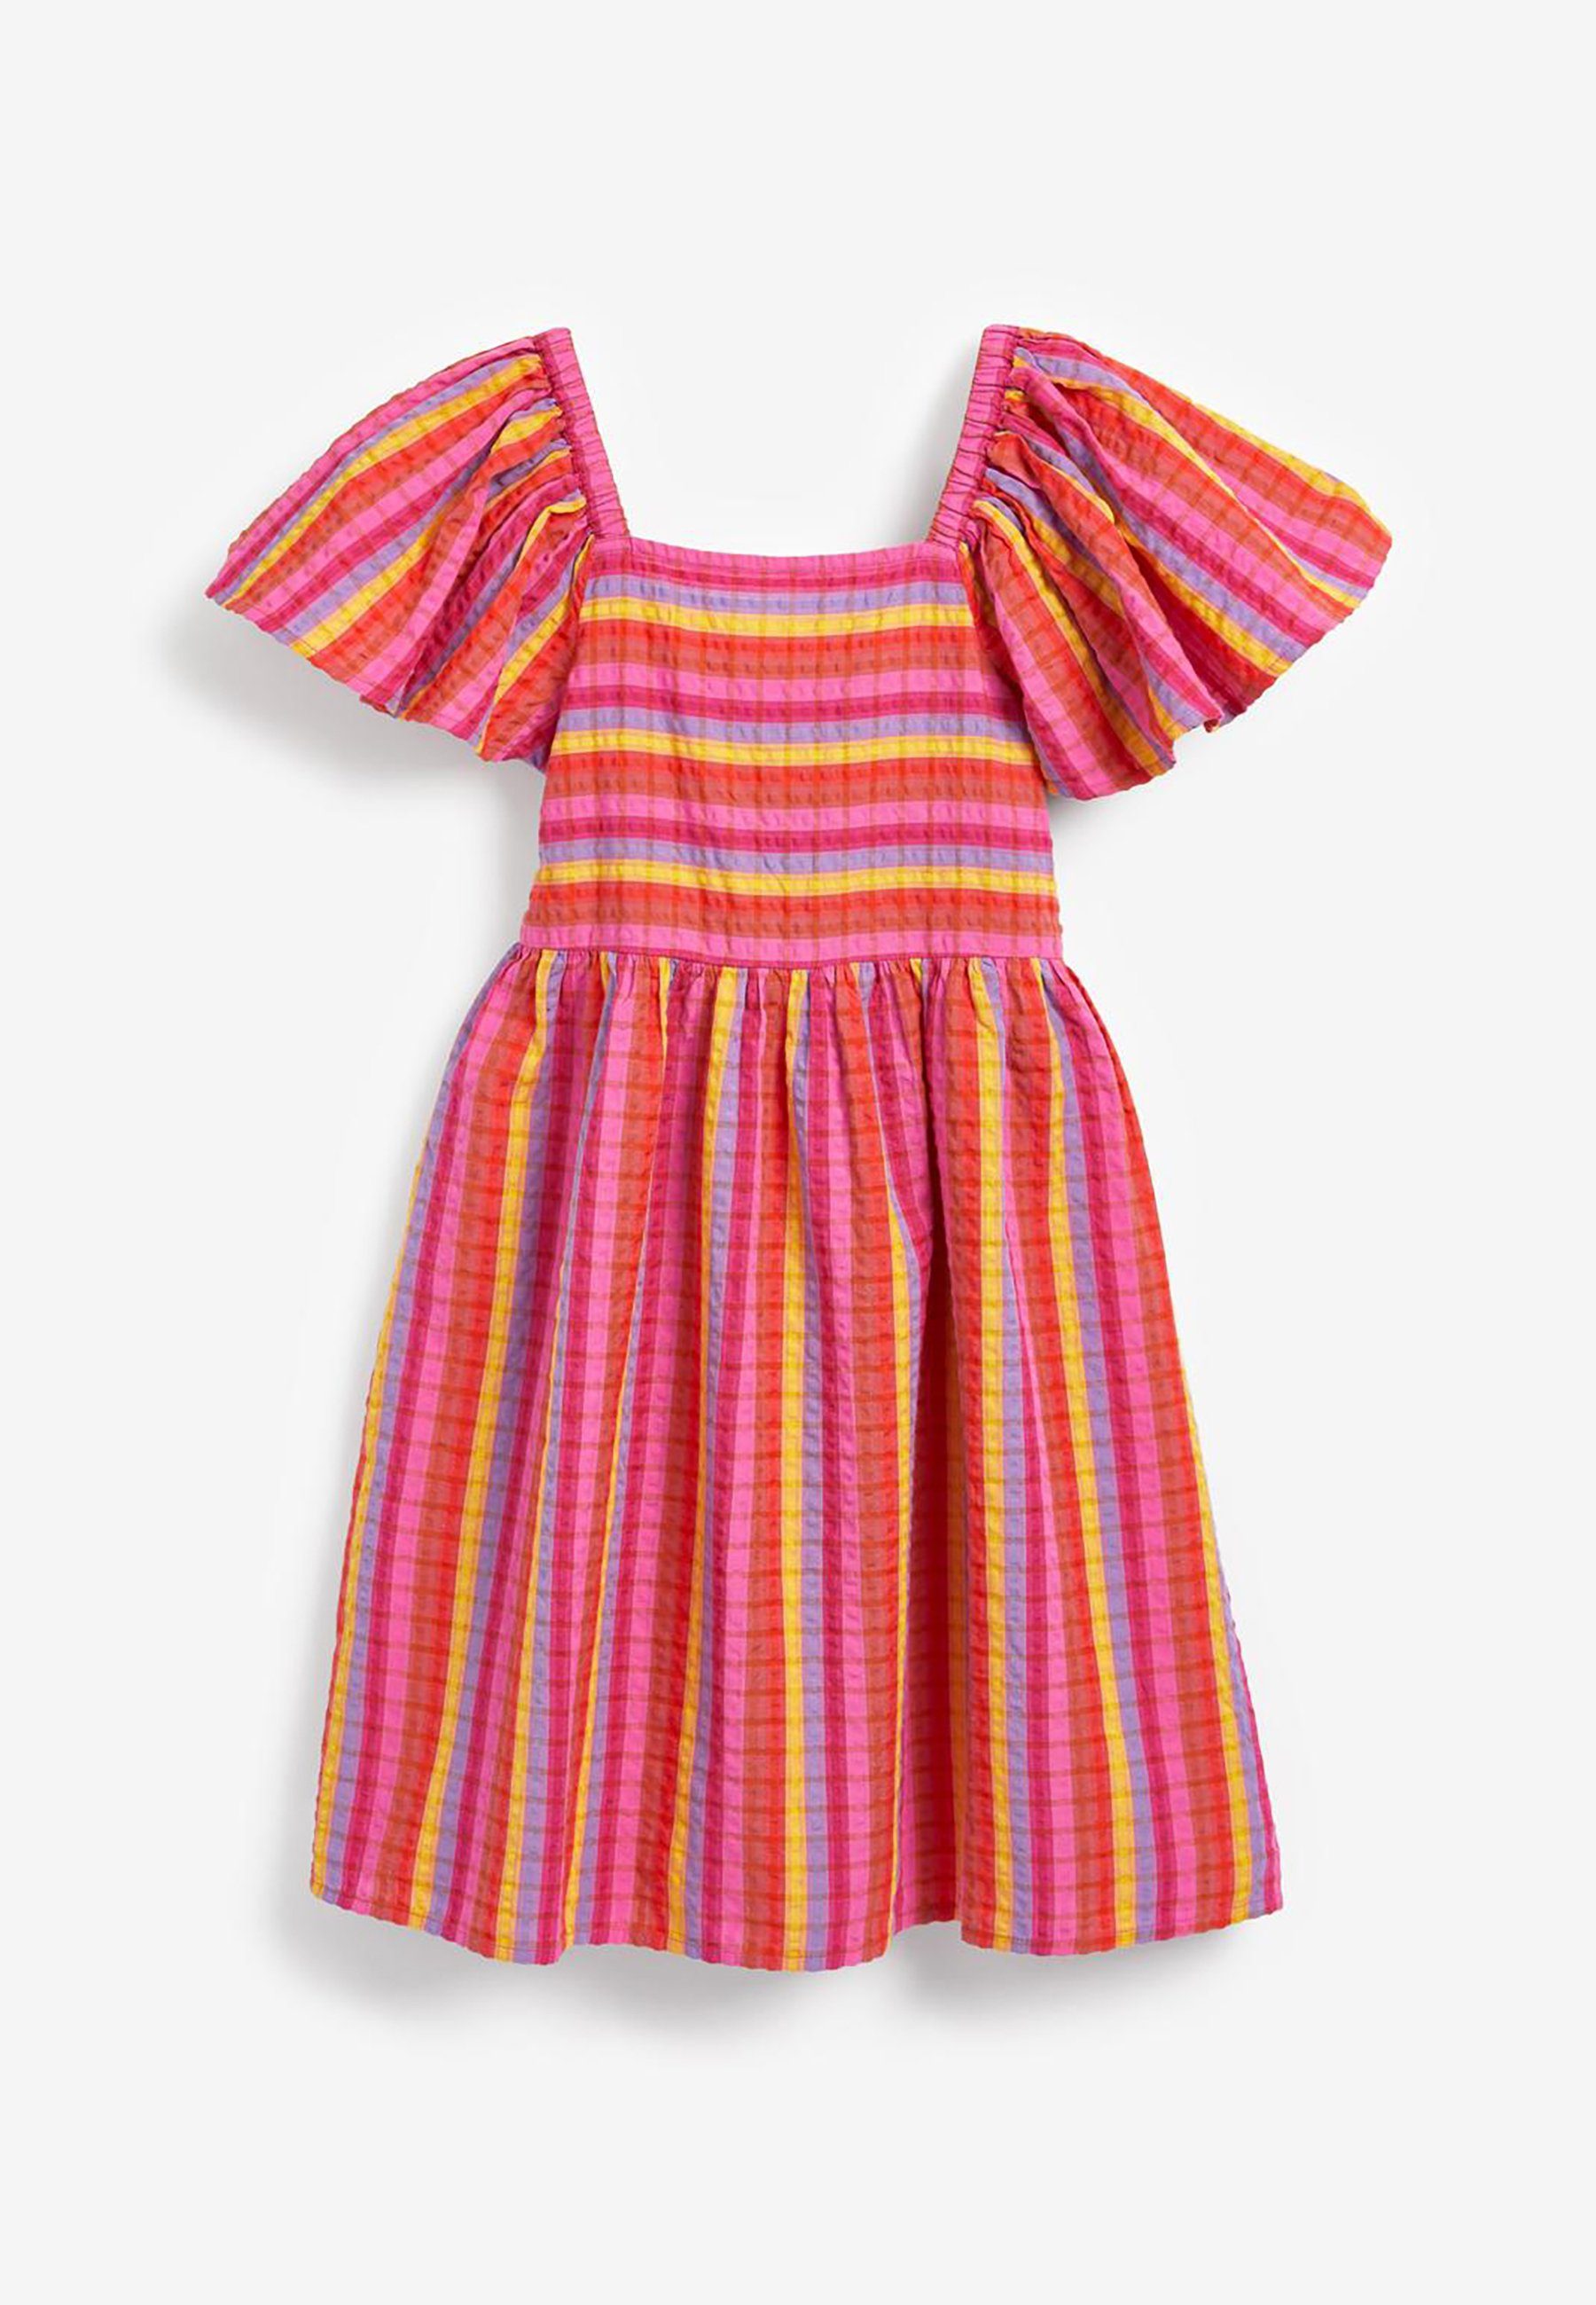 Next Sommerkleid »Kleid mit Rüschenärmeln« kaufen | OTTO